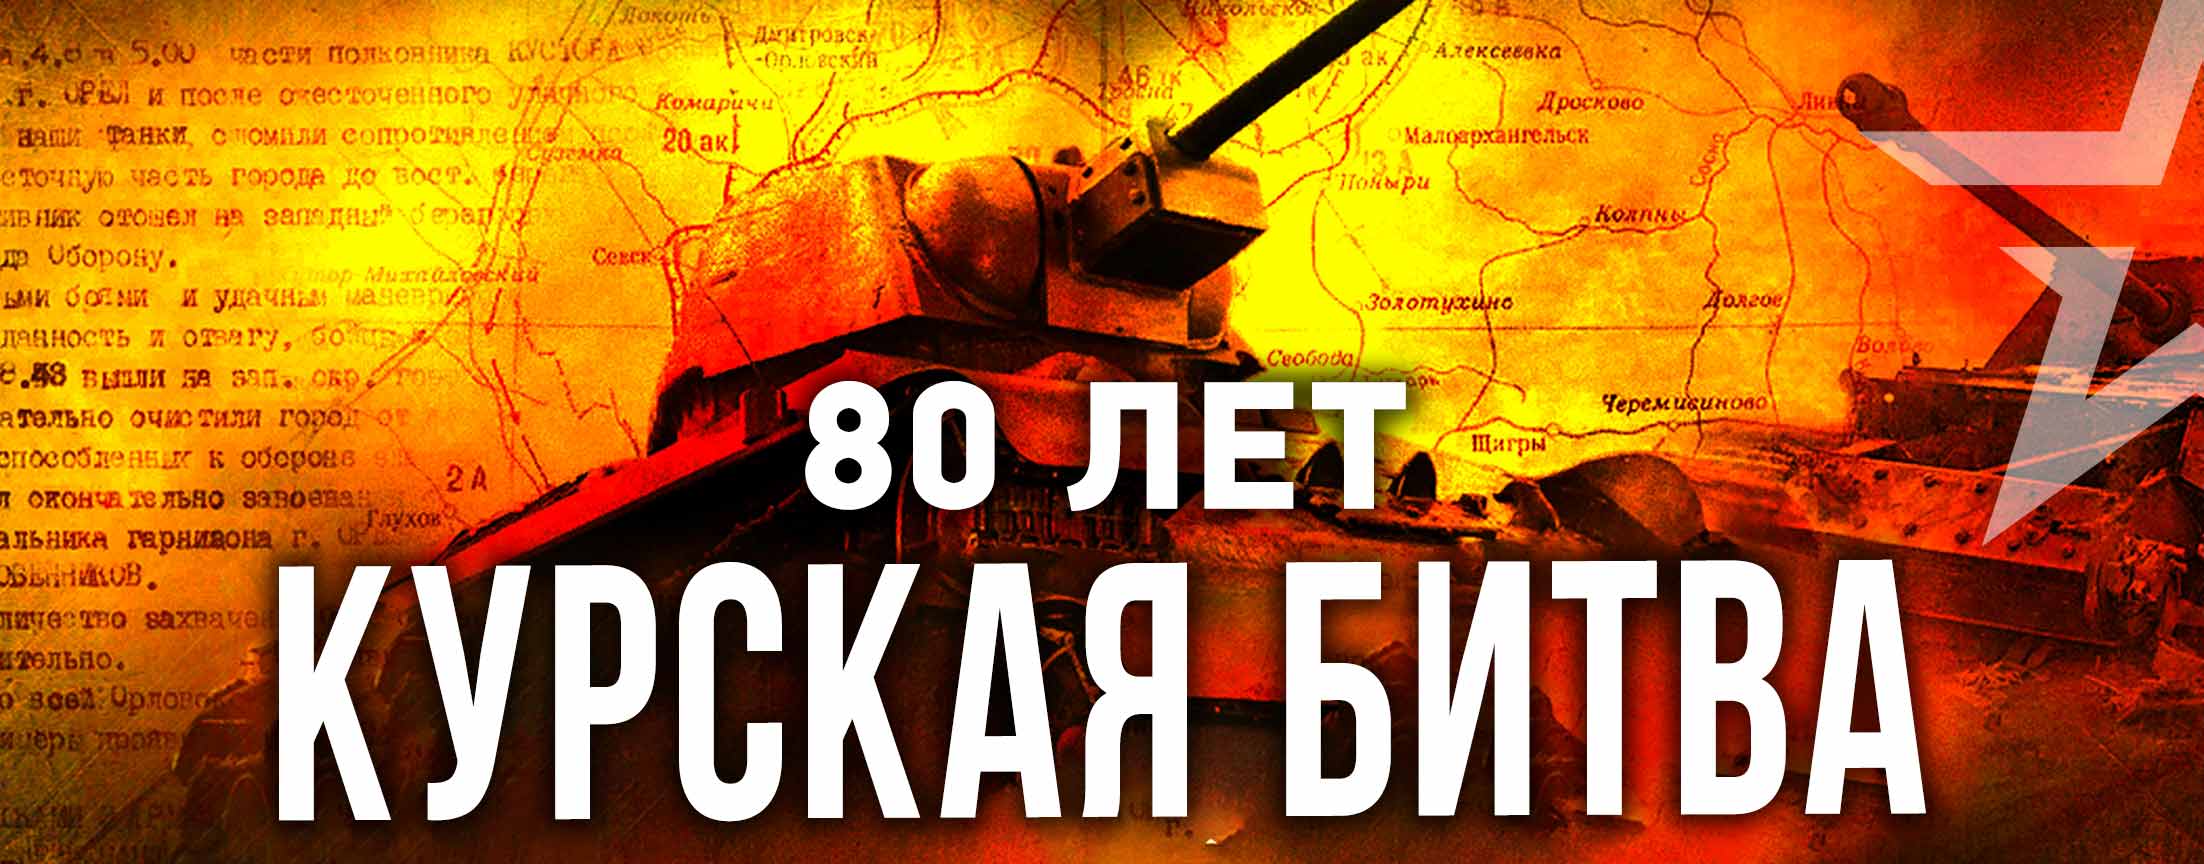 Курская битва 80 лет